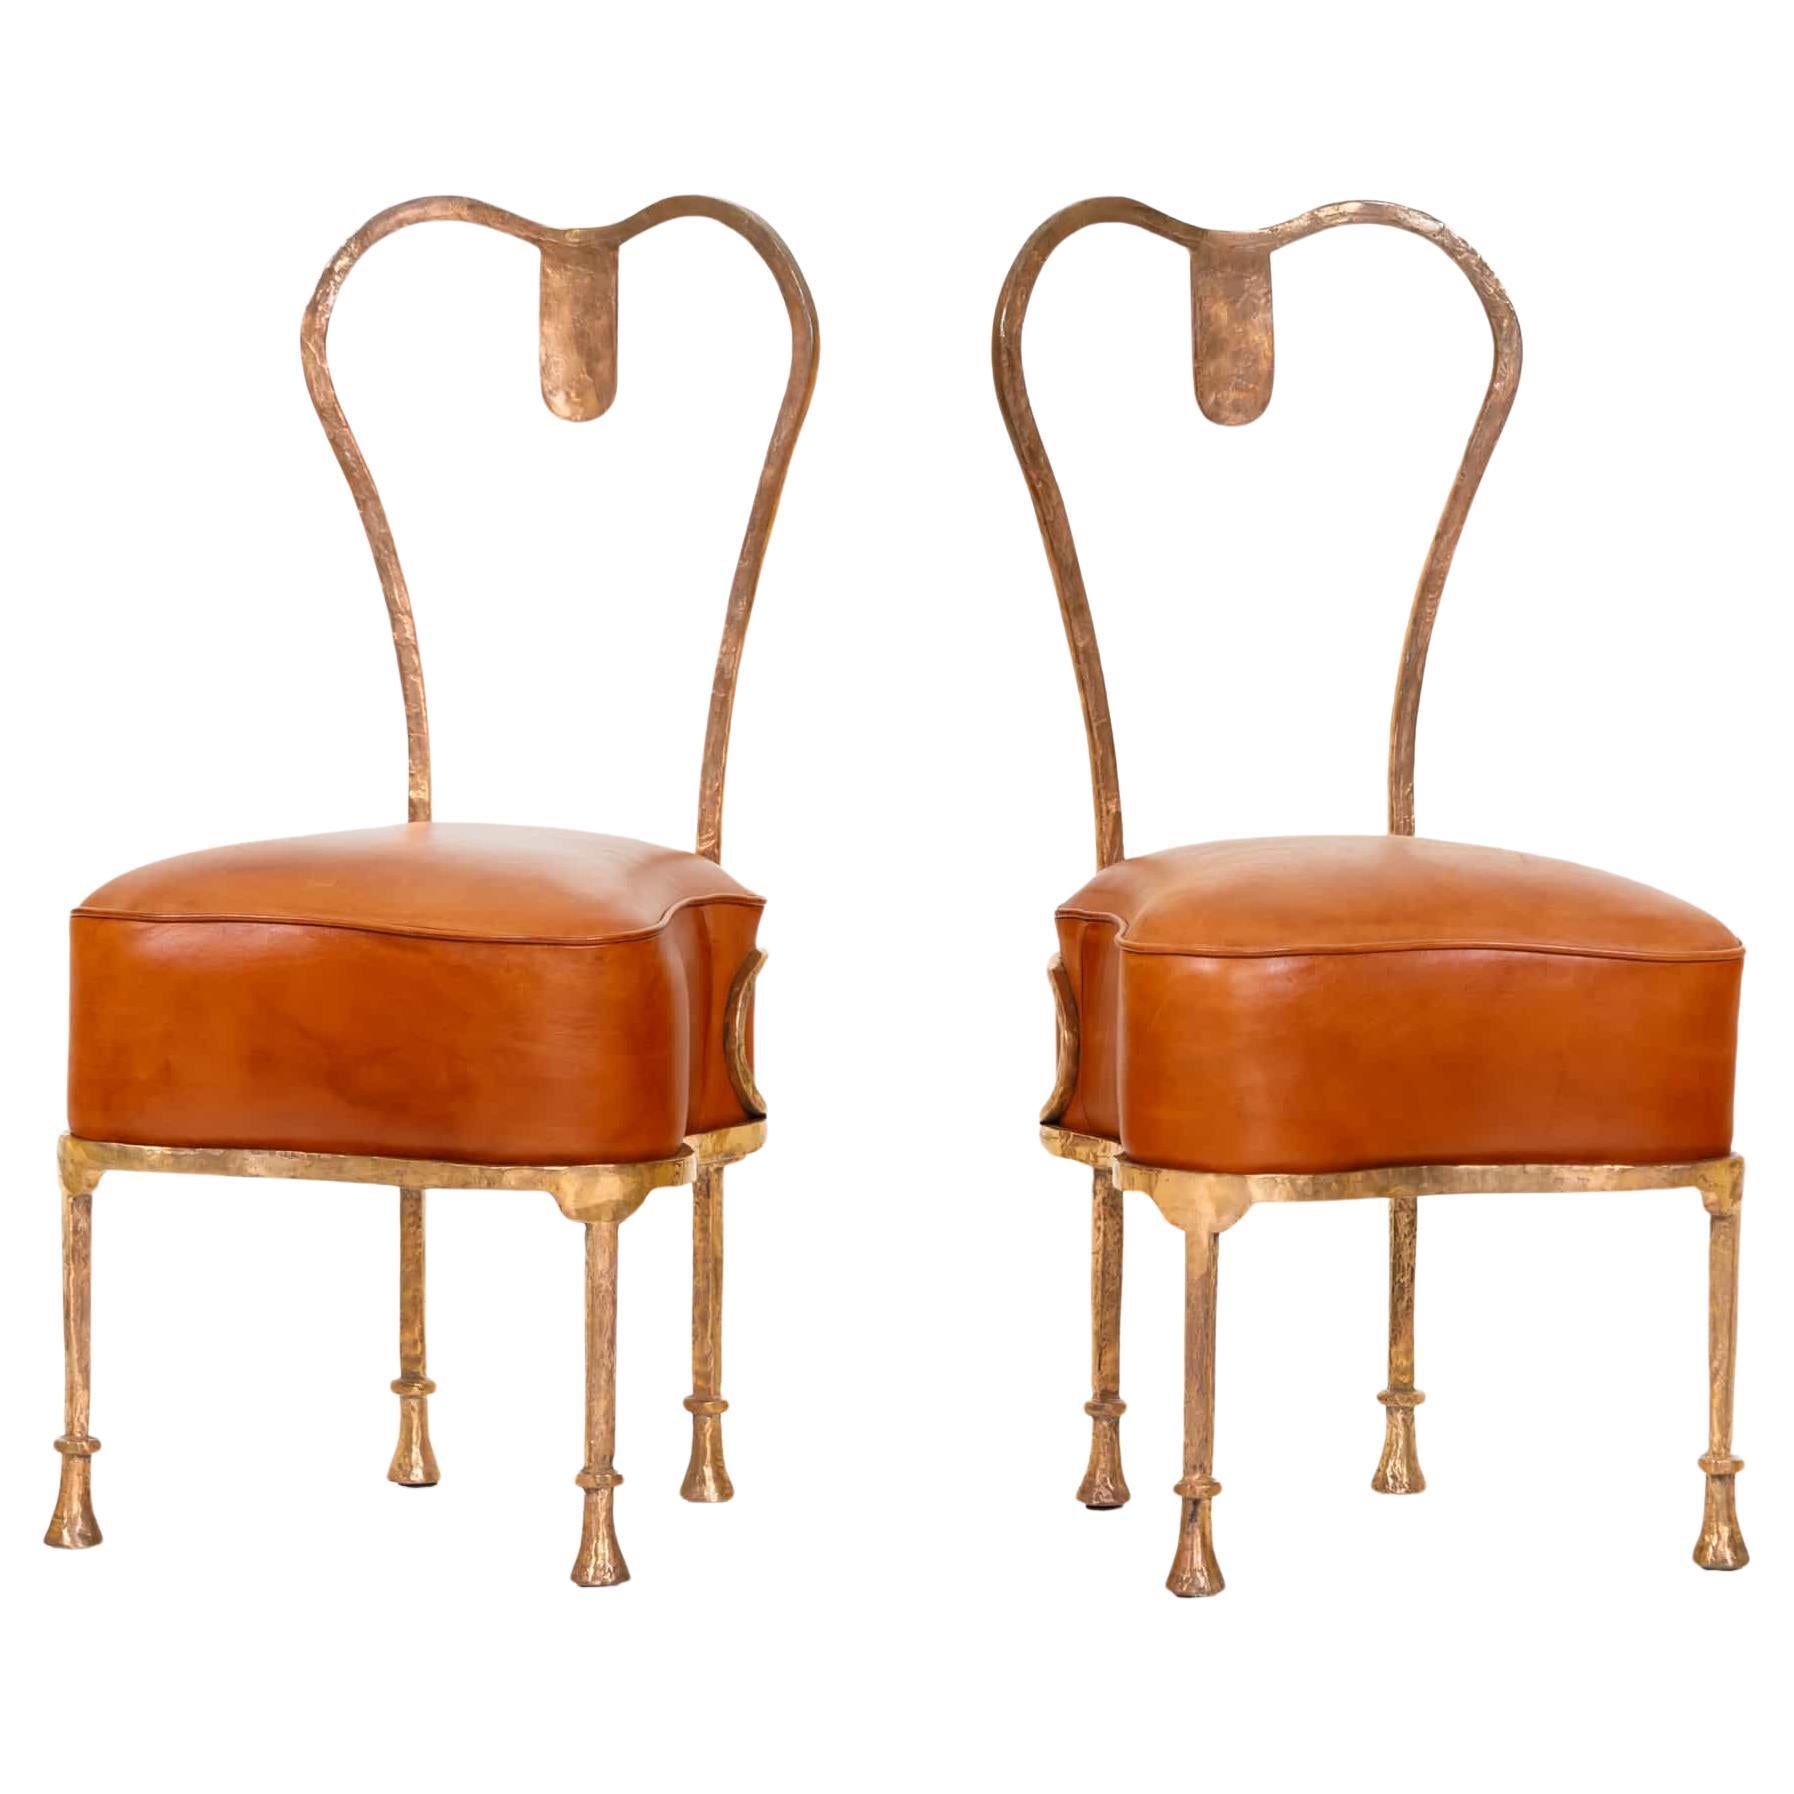 Eric Schmitt (*1955), Osselet Chairs, 1996 For Sale